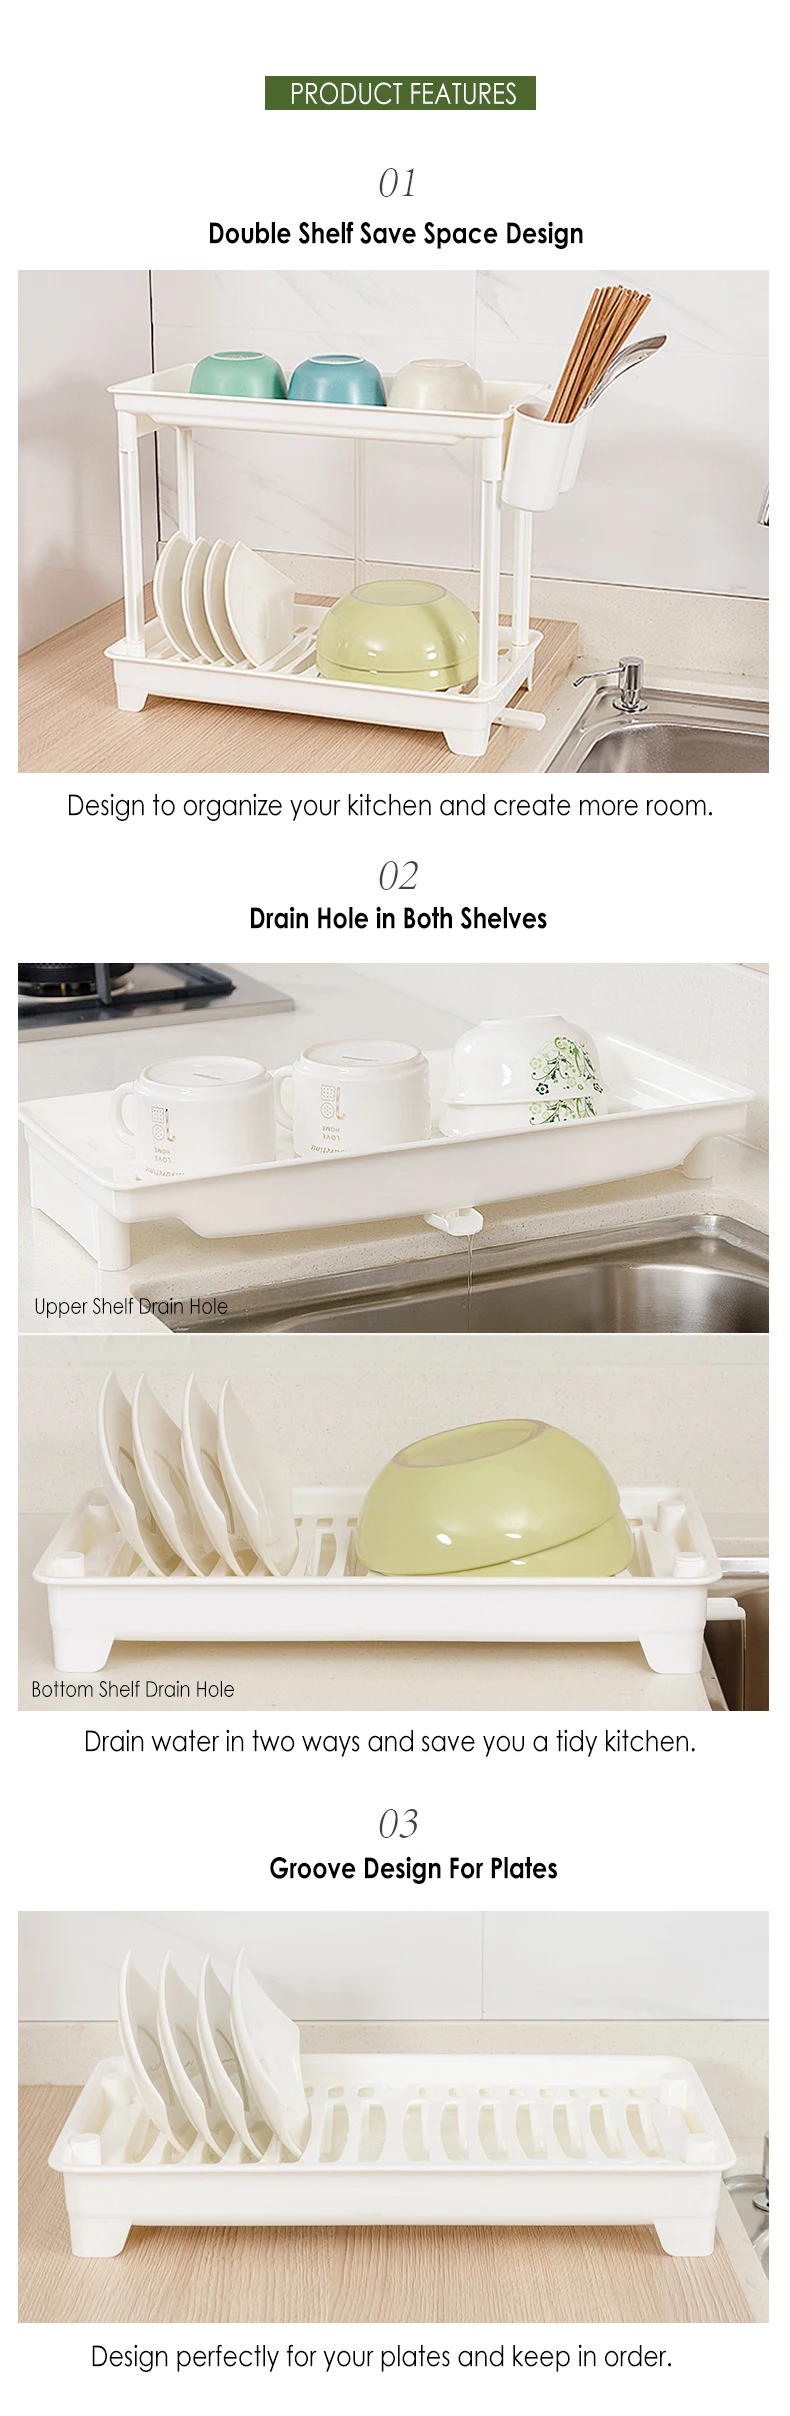 Двойной стеллаж для сушки посуды